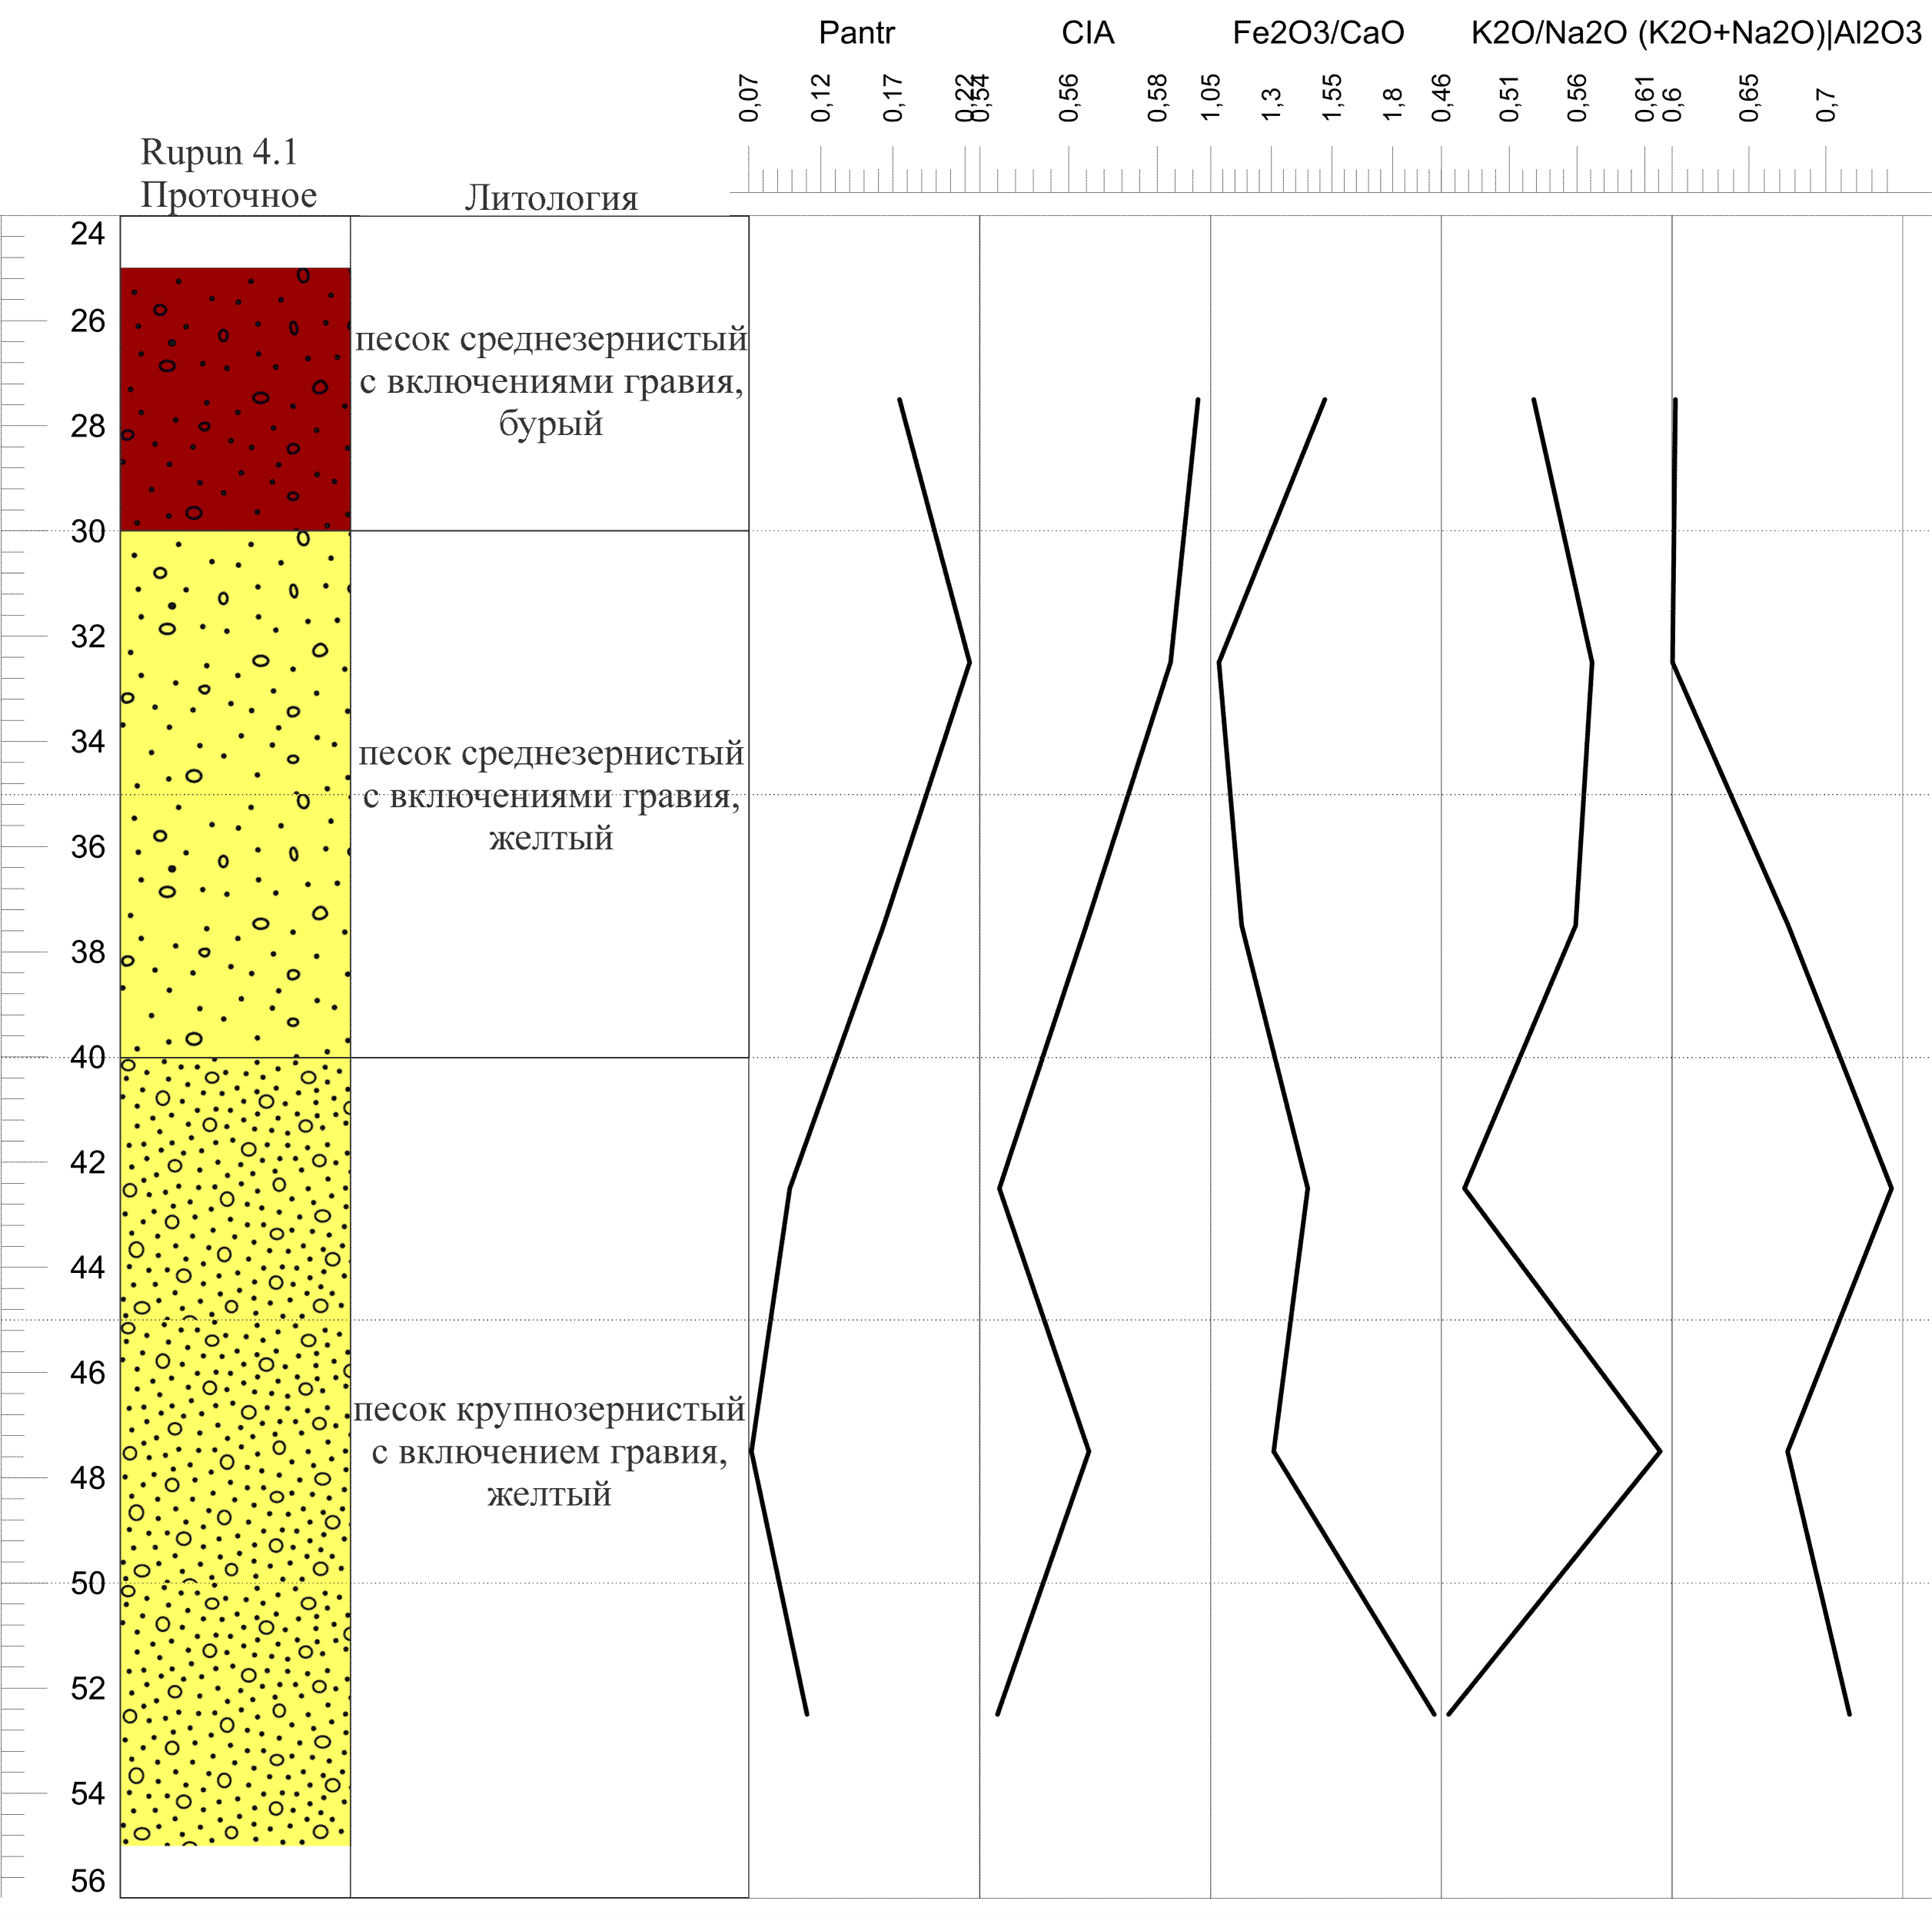 Графики изменения показателей геохимических индикаторов ландшафтно-климатических условий и антропогенной активности для археологического памятника «Проточное (Rupun 4.1)»